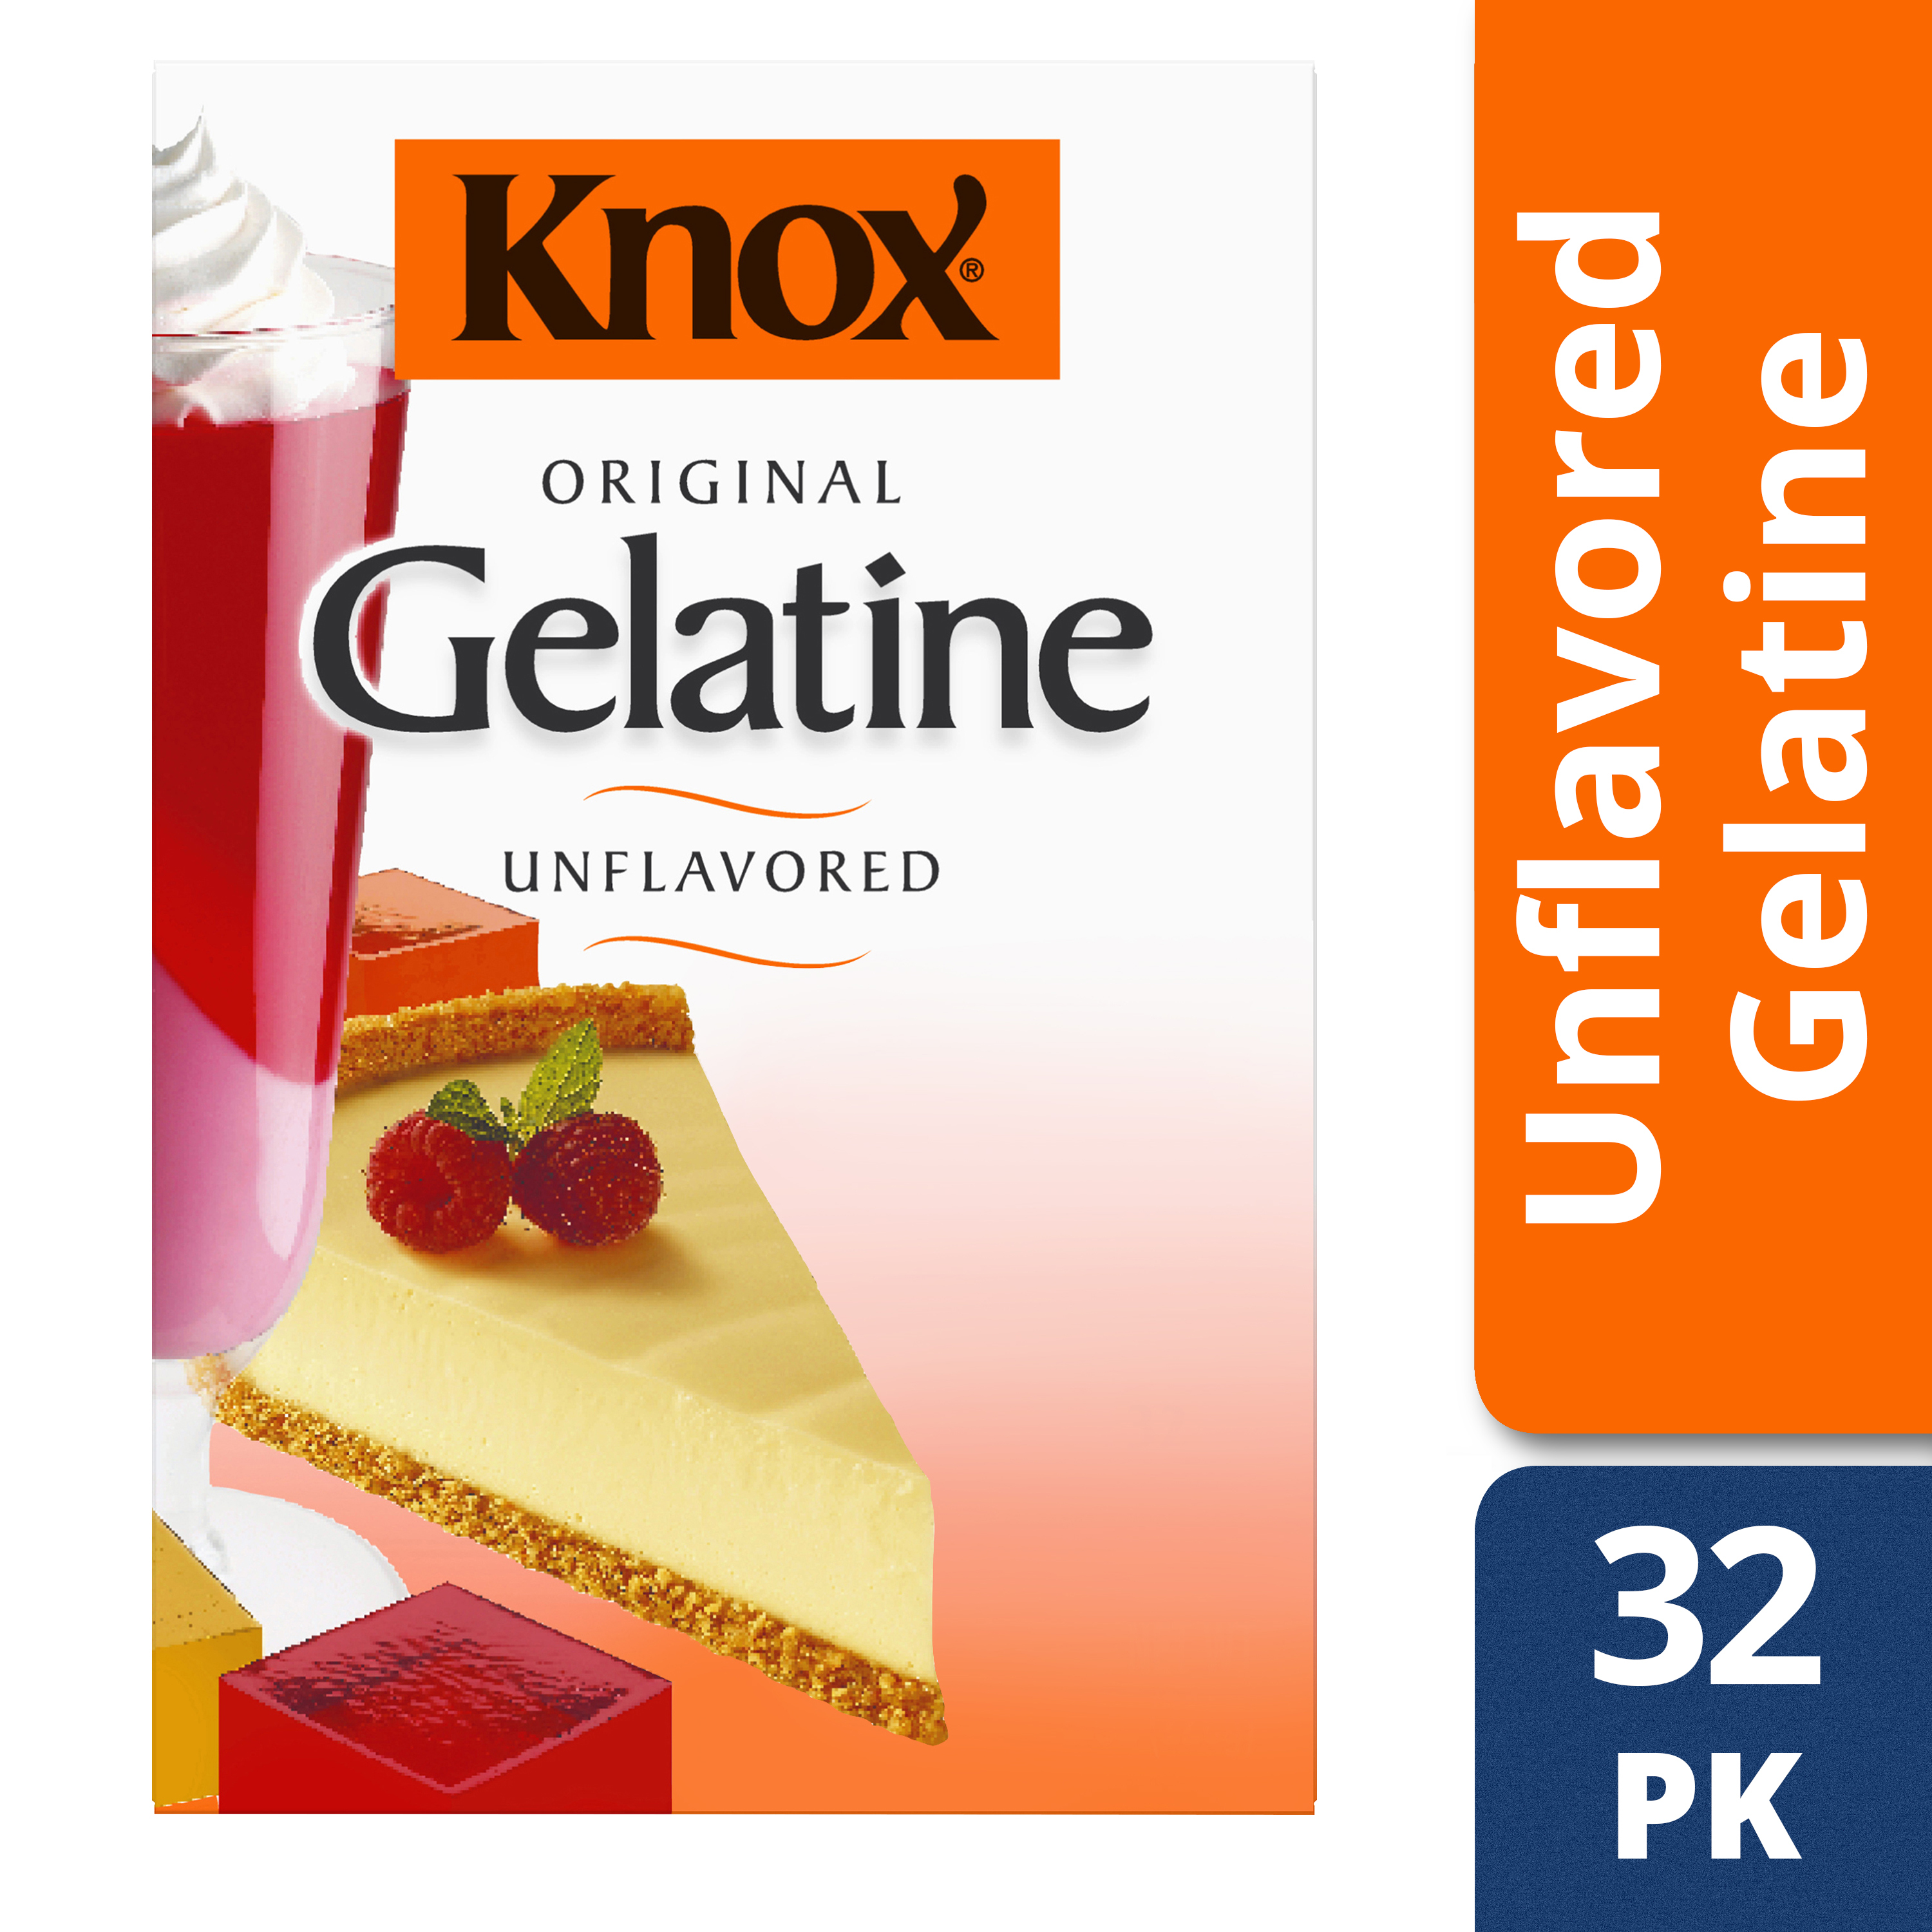 knox gelatin packets